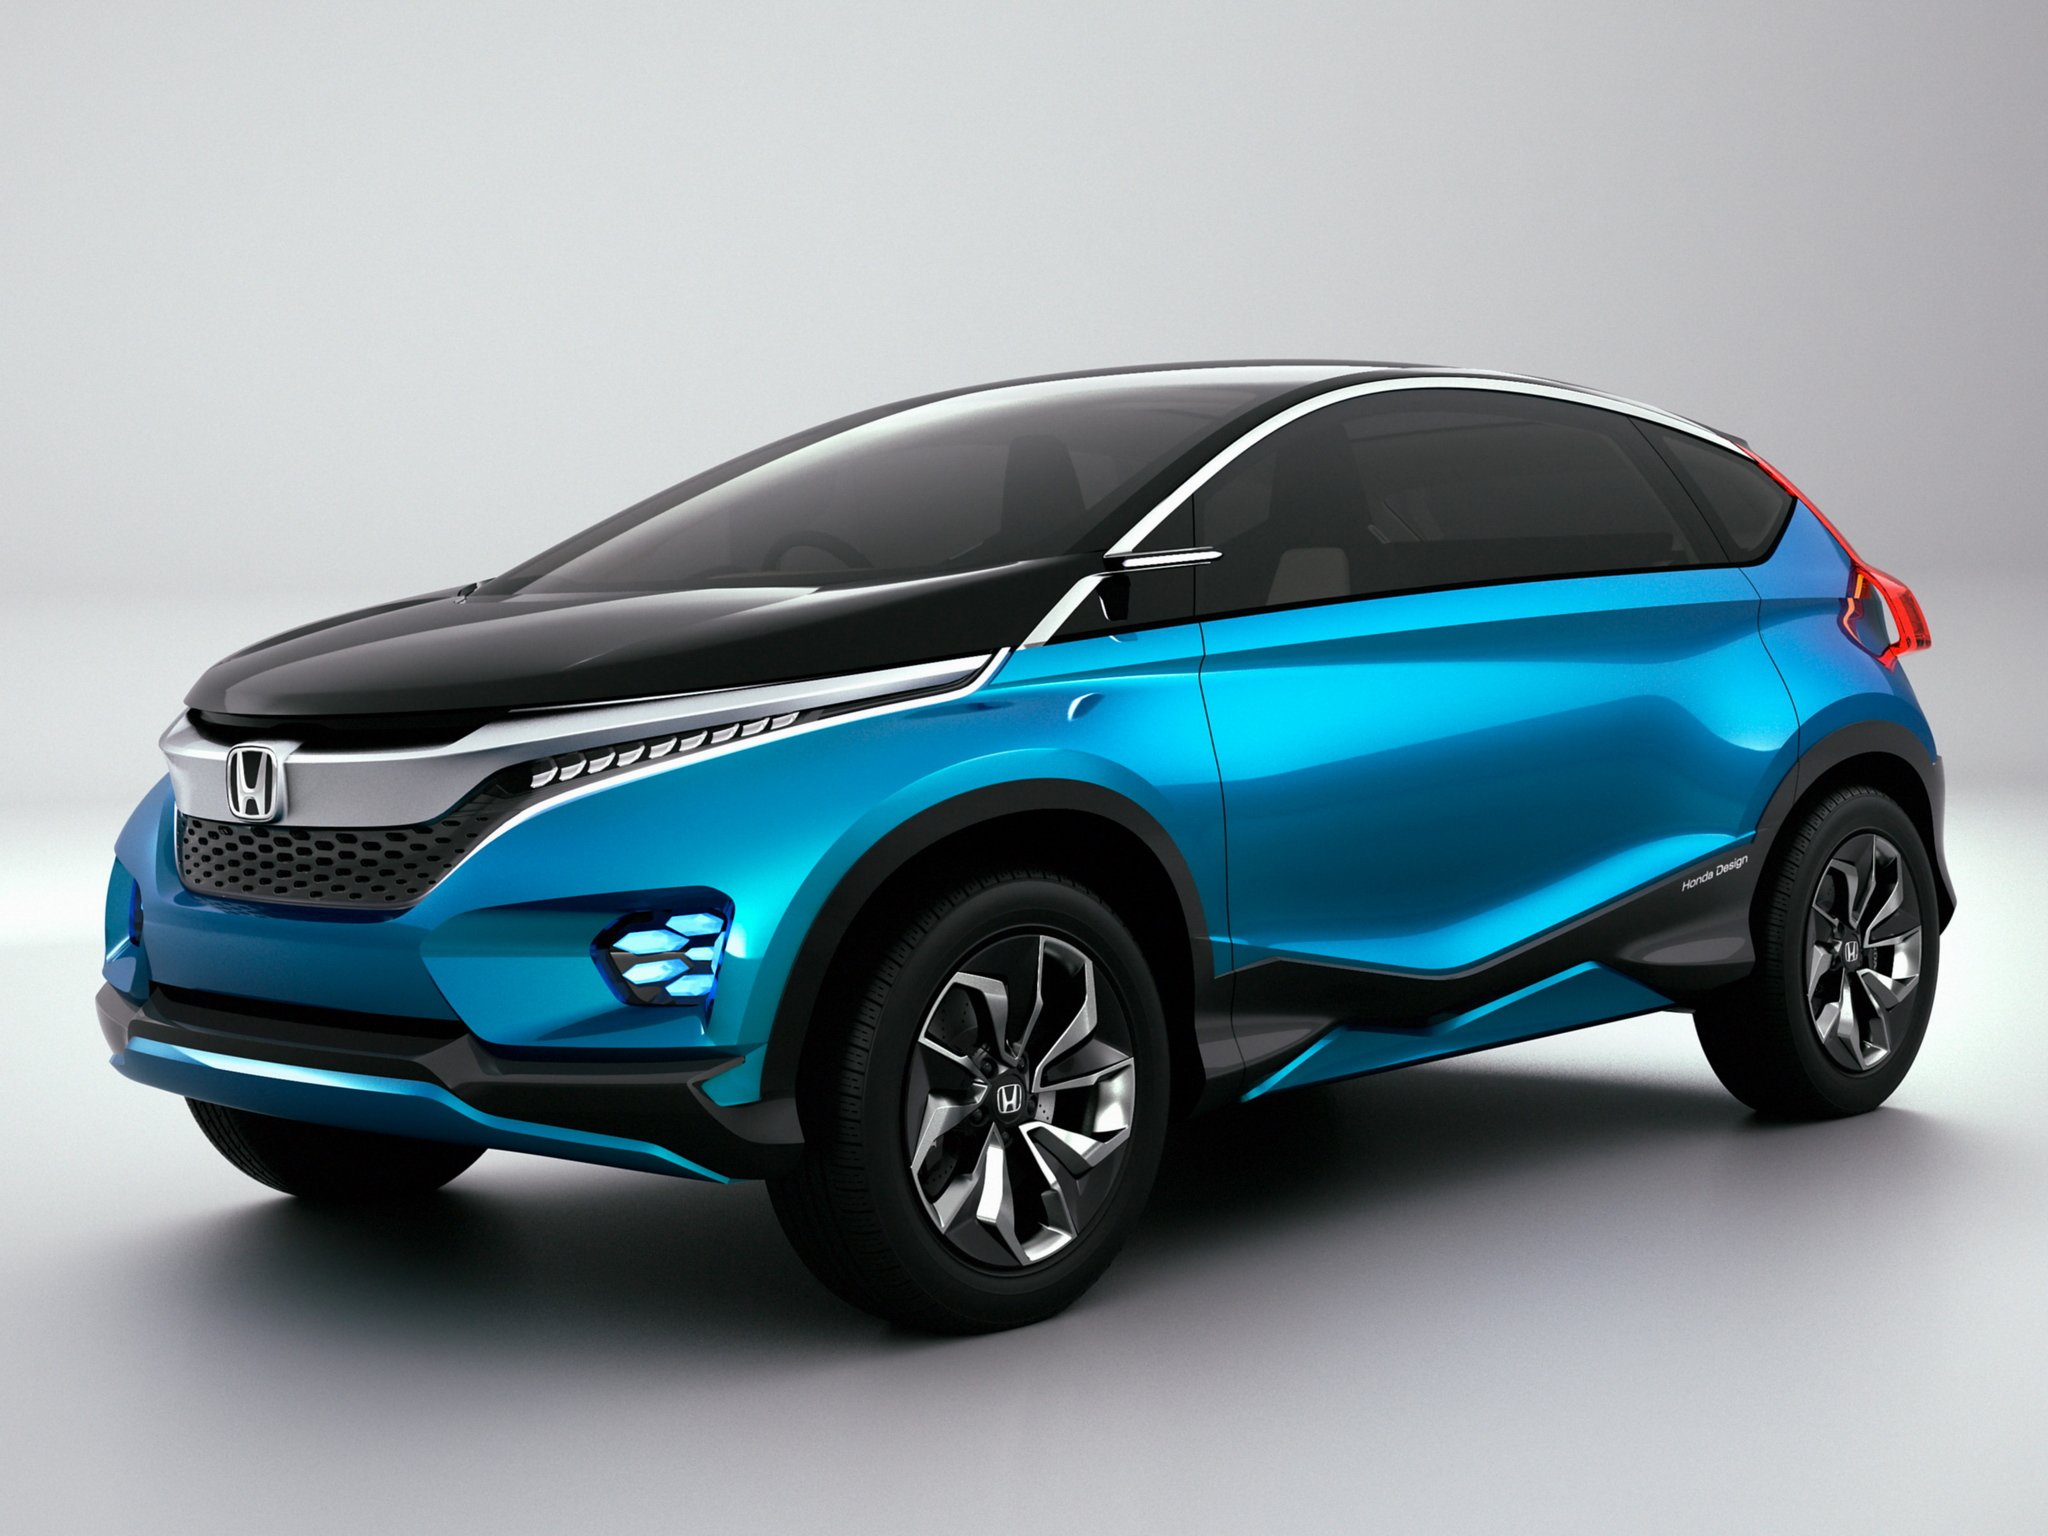 2014, Honda, Vision, Xs 1, Concept, Van, Hg Wallpaper